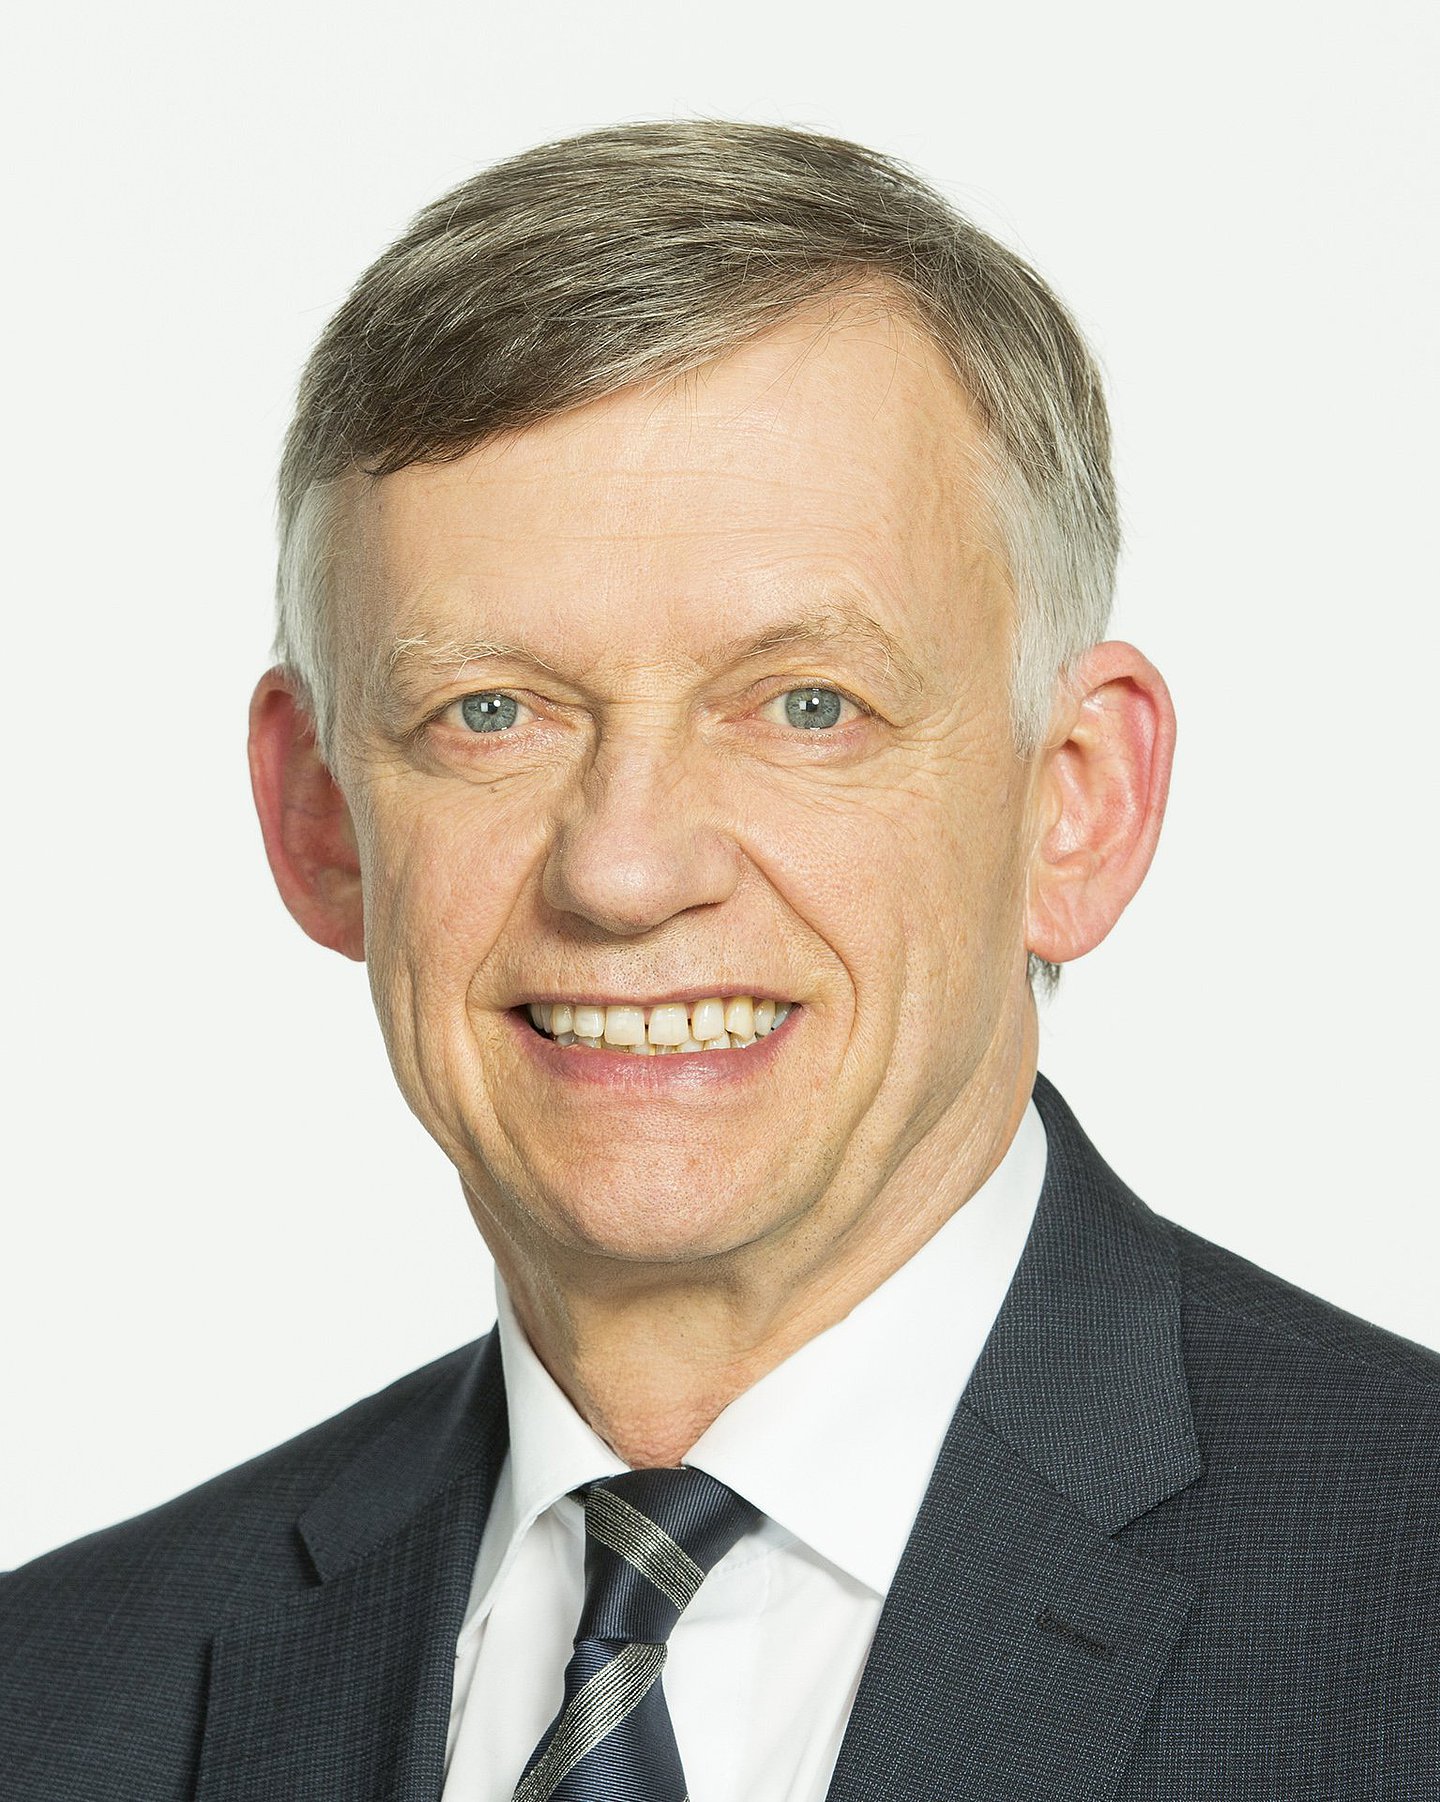 Porträt von Johannes Heß, alternierender AOK-Verwaltungsratsvorsitzender und Arbeitgebervertreter bei der AOK NordWest